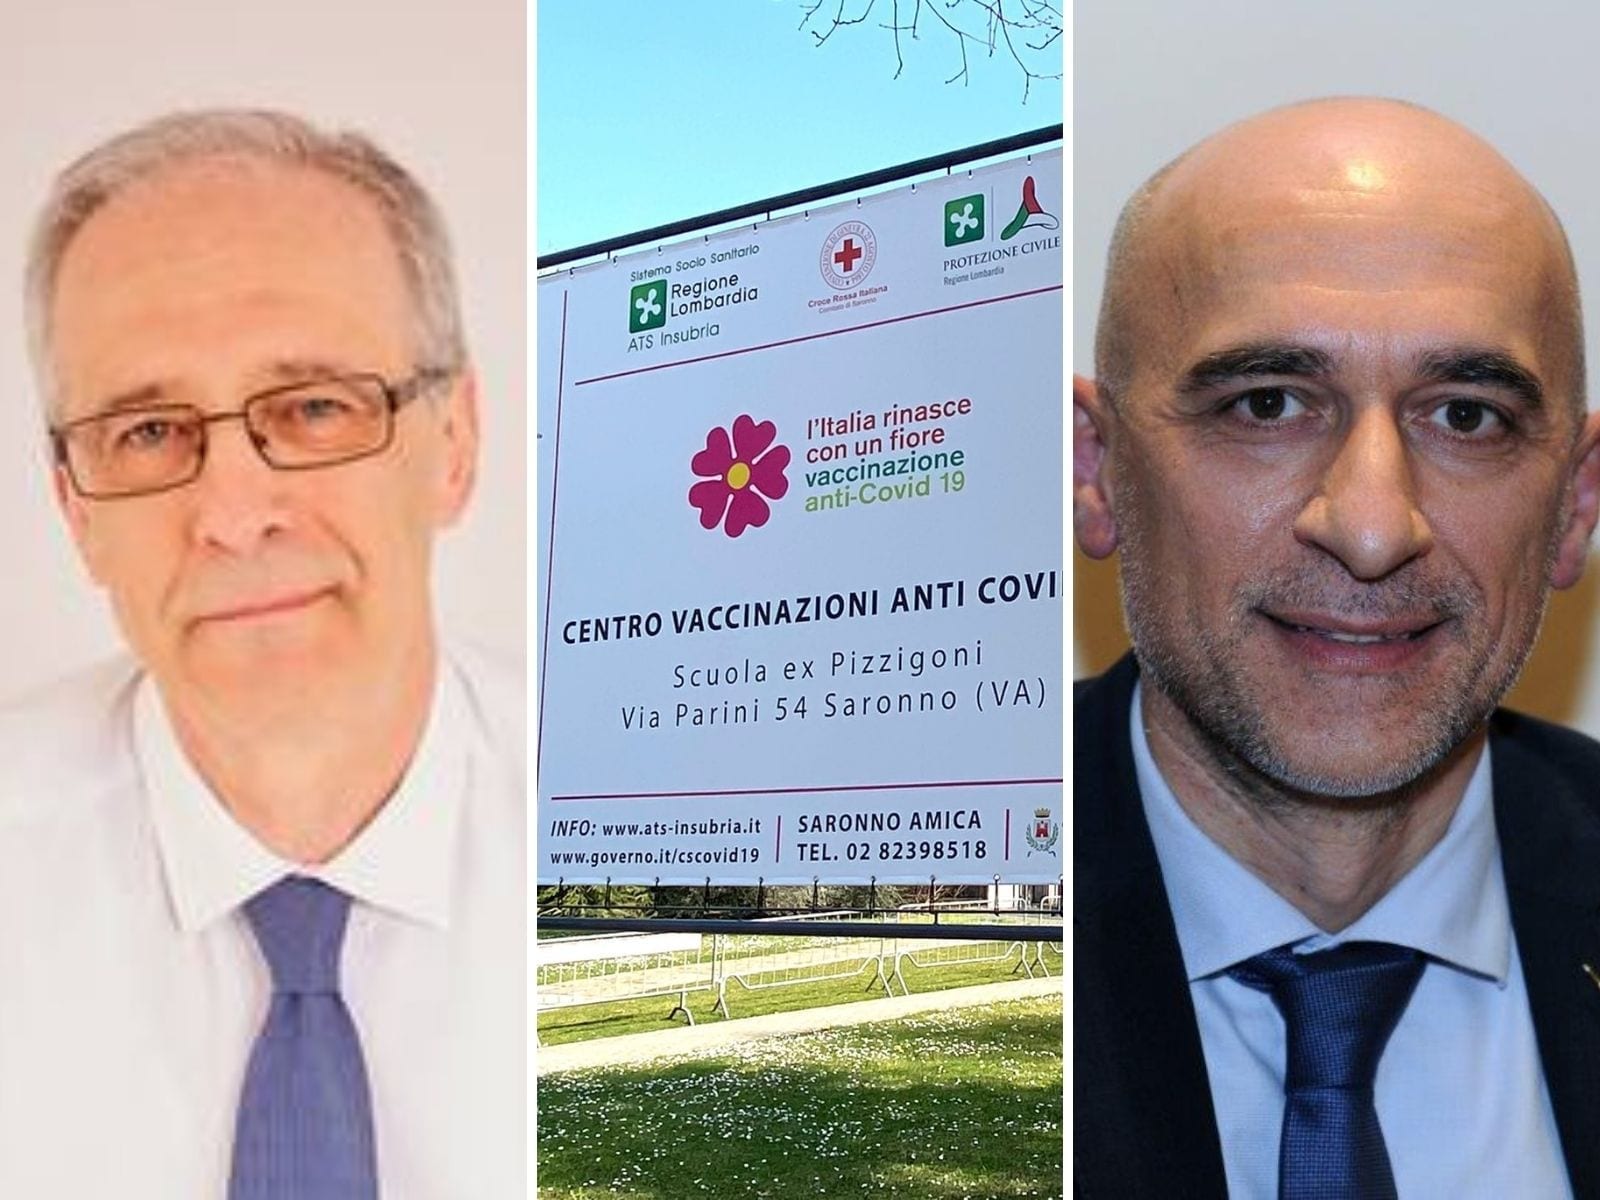 Ex Pizzigoni, Airoldi sull’interrogazione Lega: “Raffaele Fagioli vuole impedire di vaccinarsi rapidamente in città”